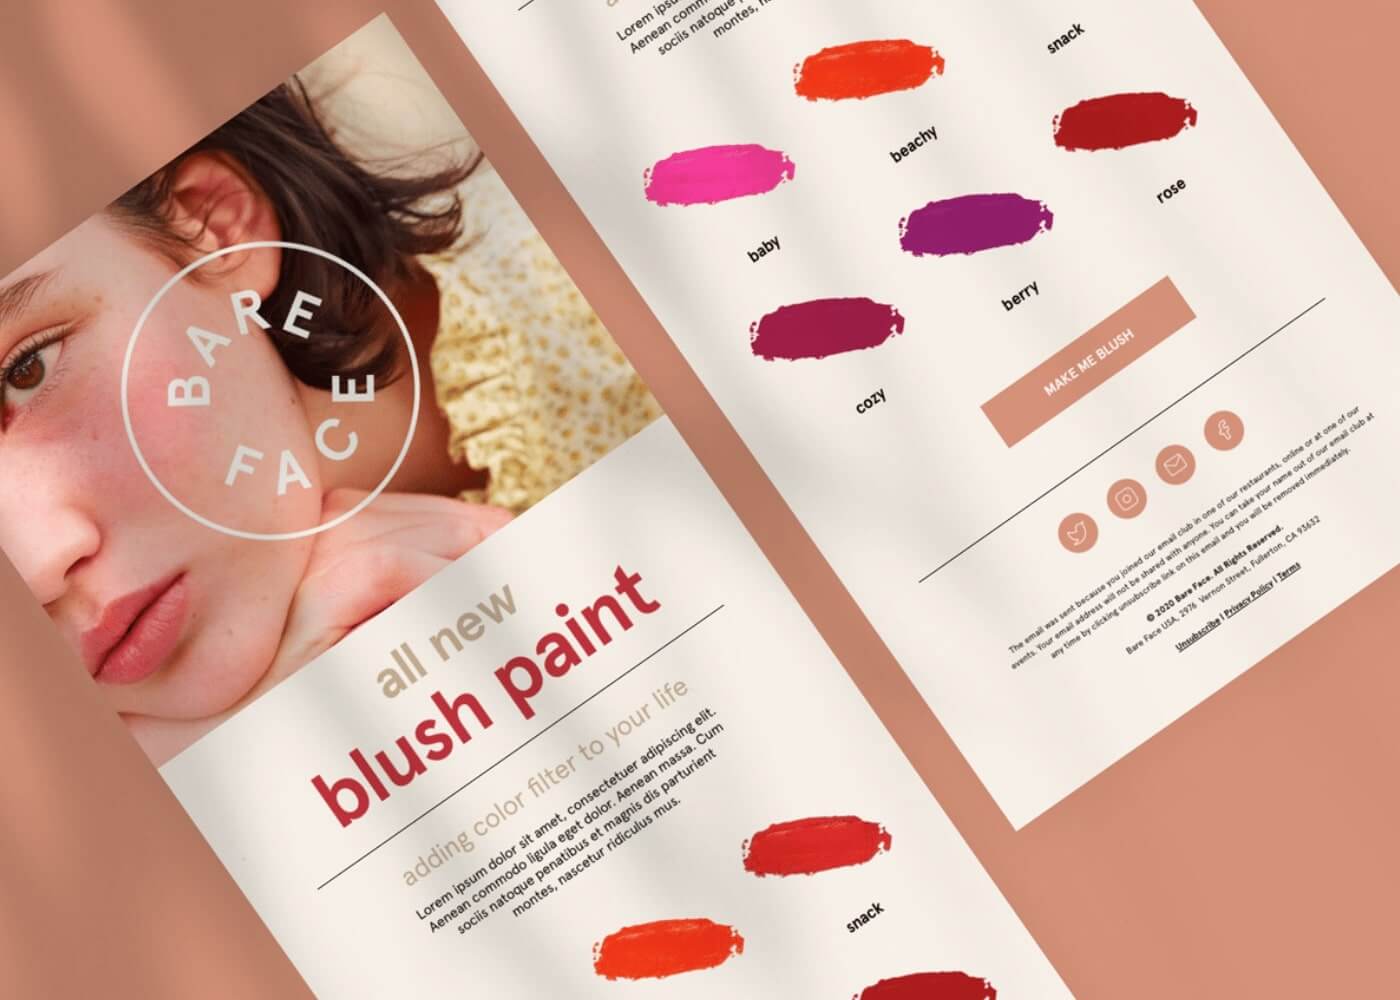 all new blush paint newsletter design